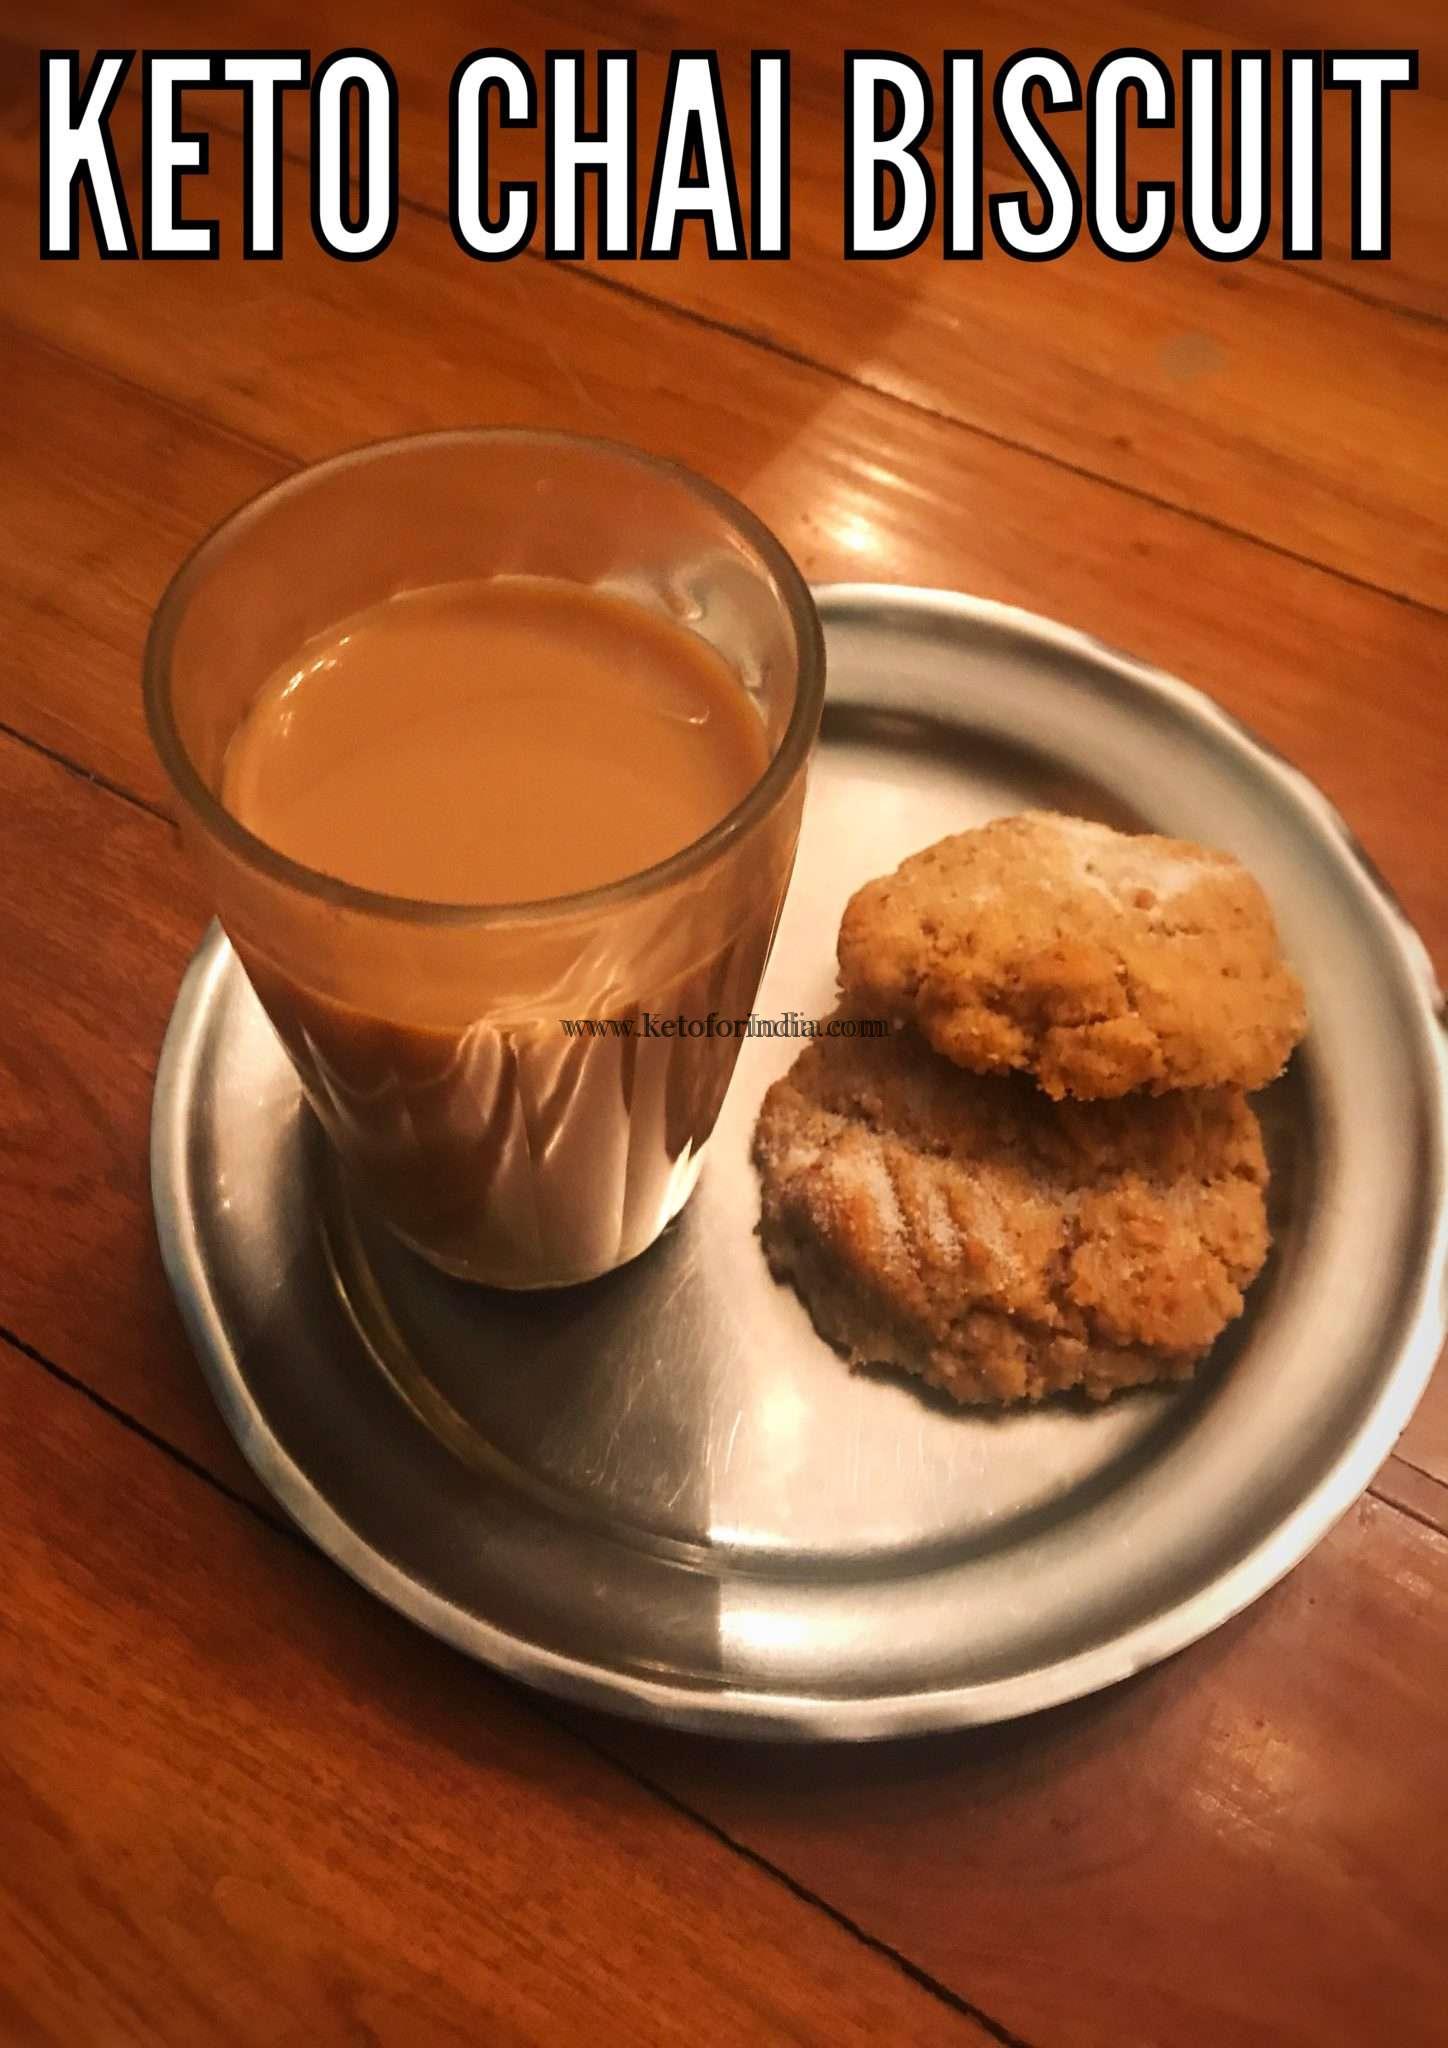 प्रिया की कीटो चाय और बिस्किट